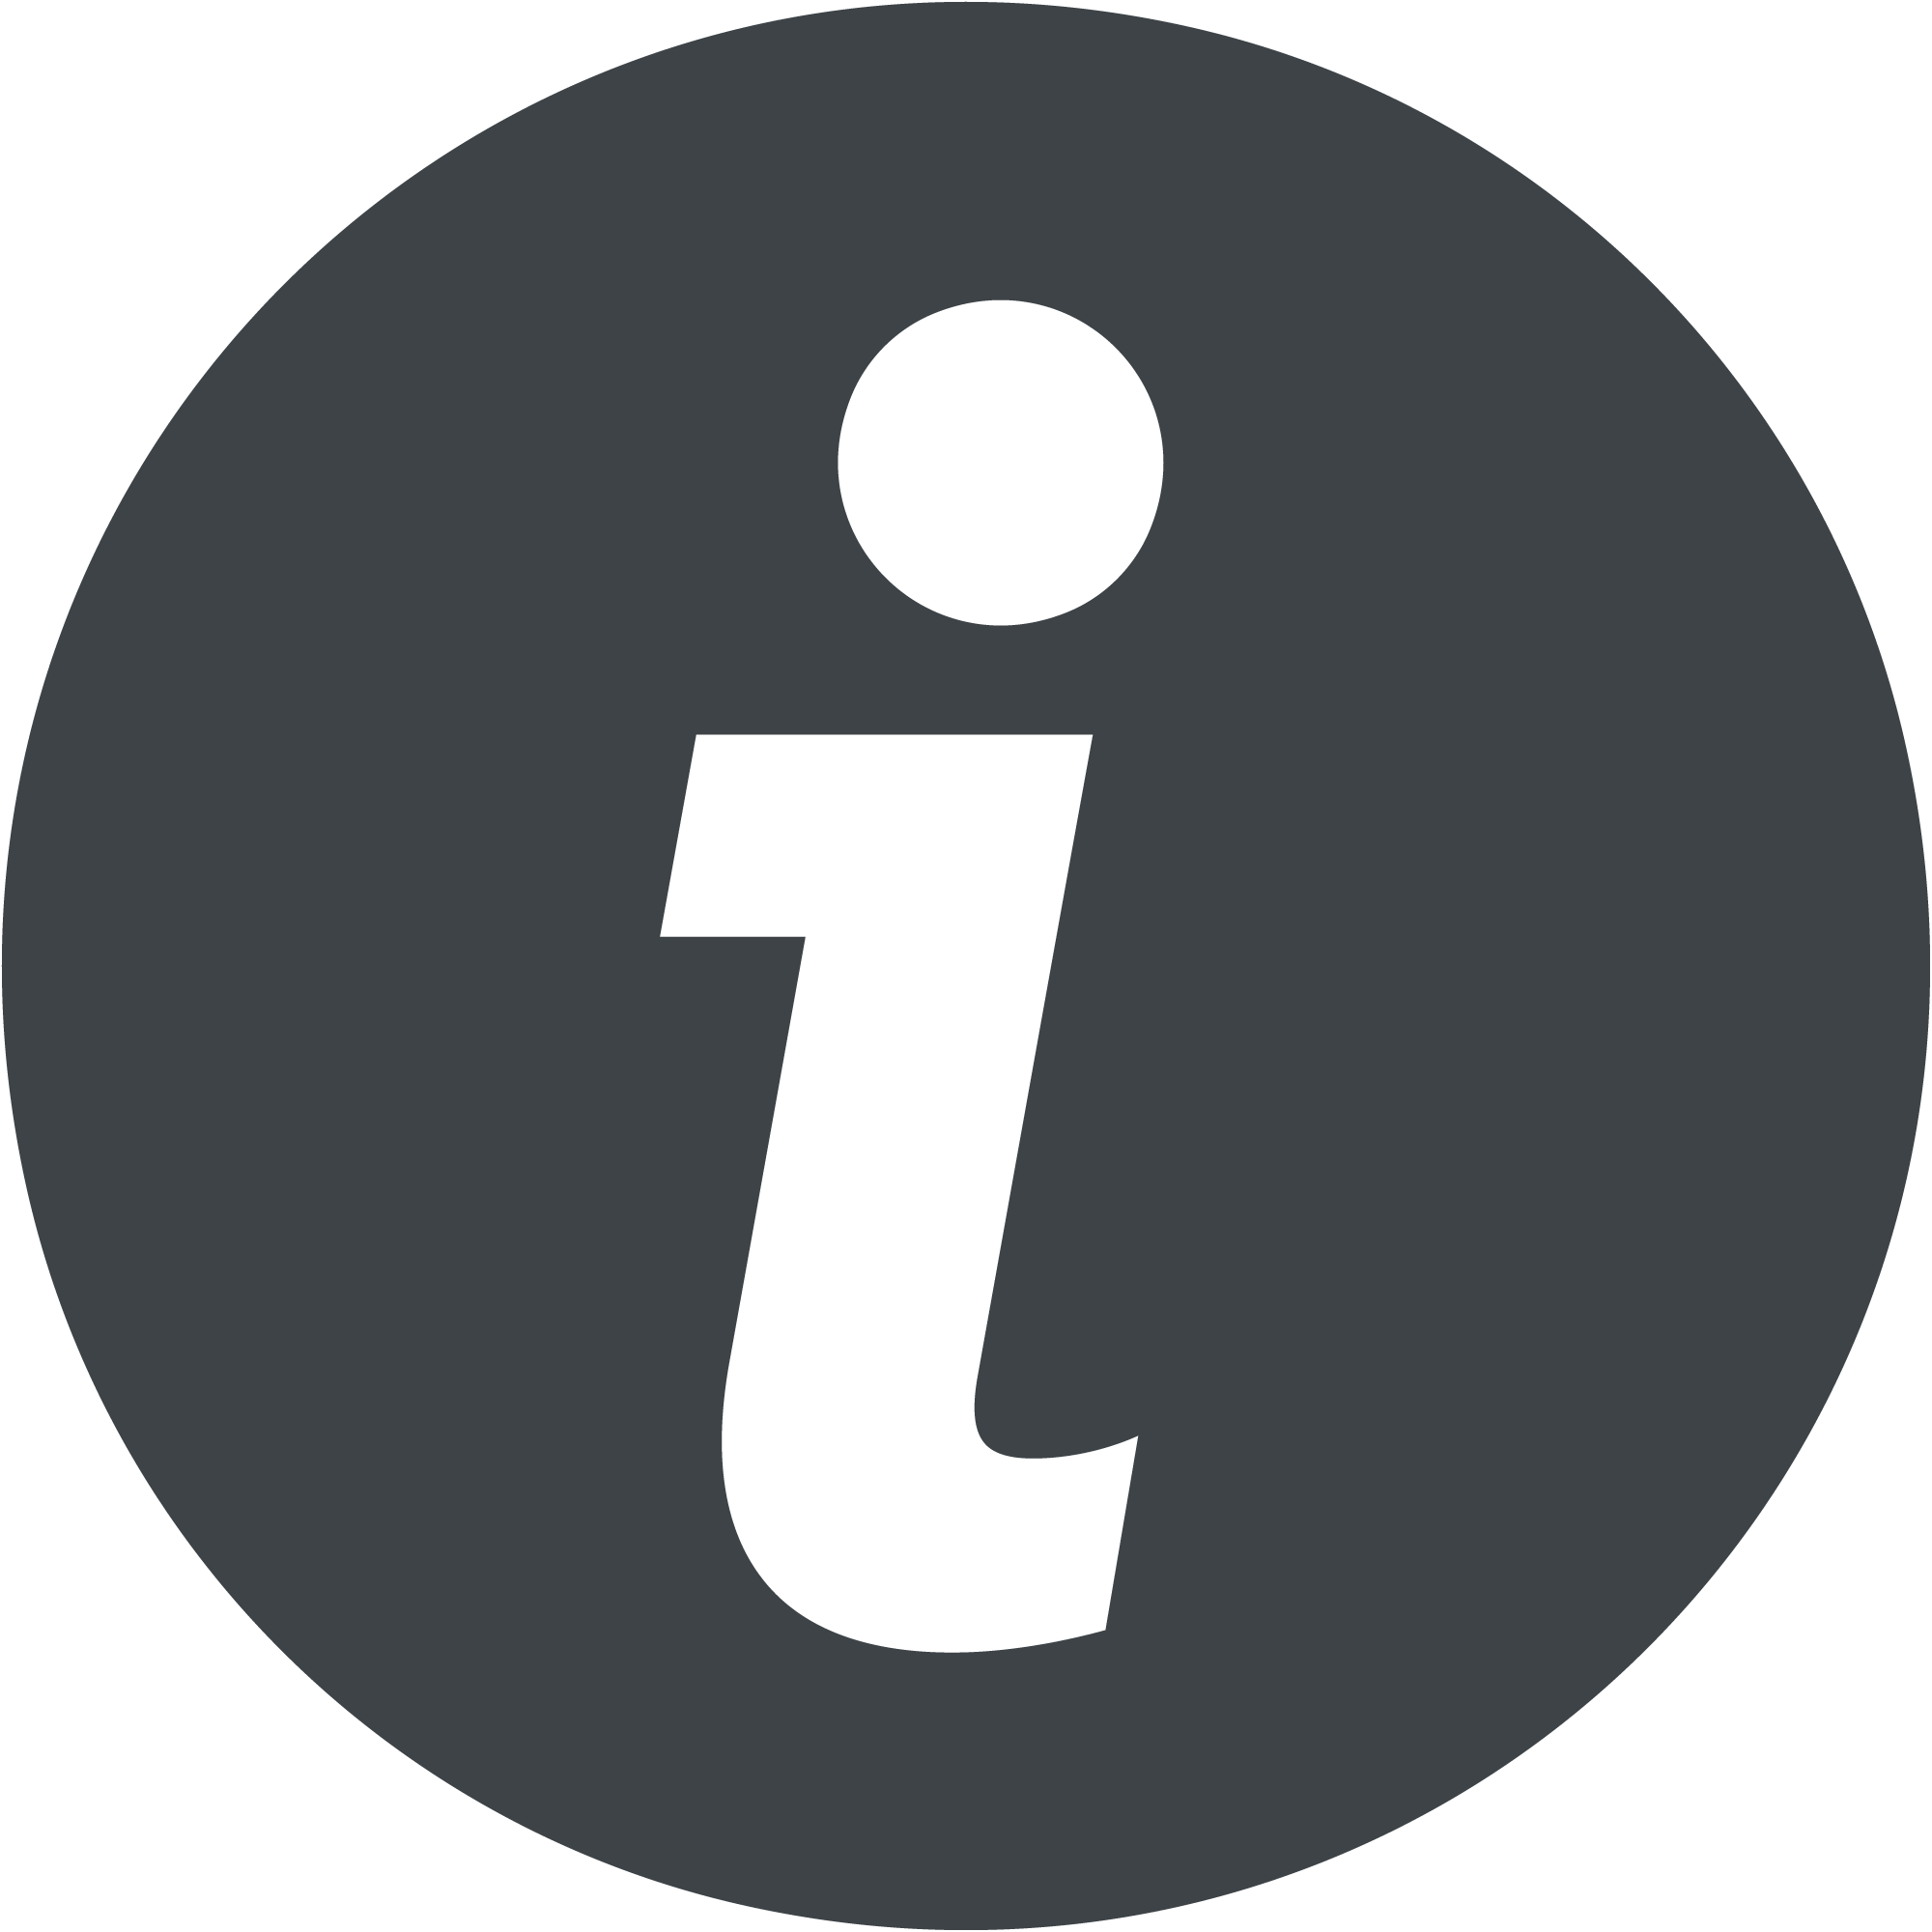 Информация. Значок информации. Знак i. Иконка информация. Логотип информации